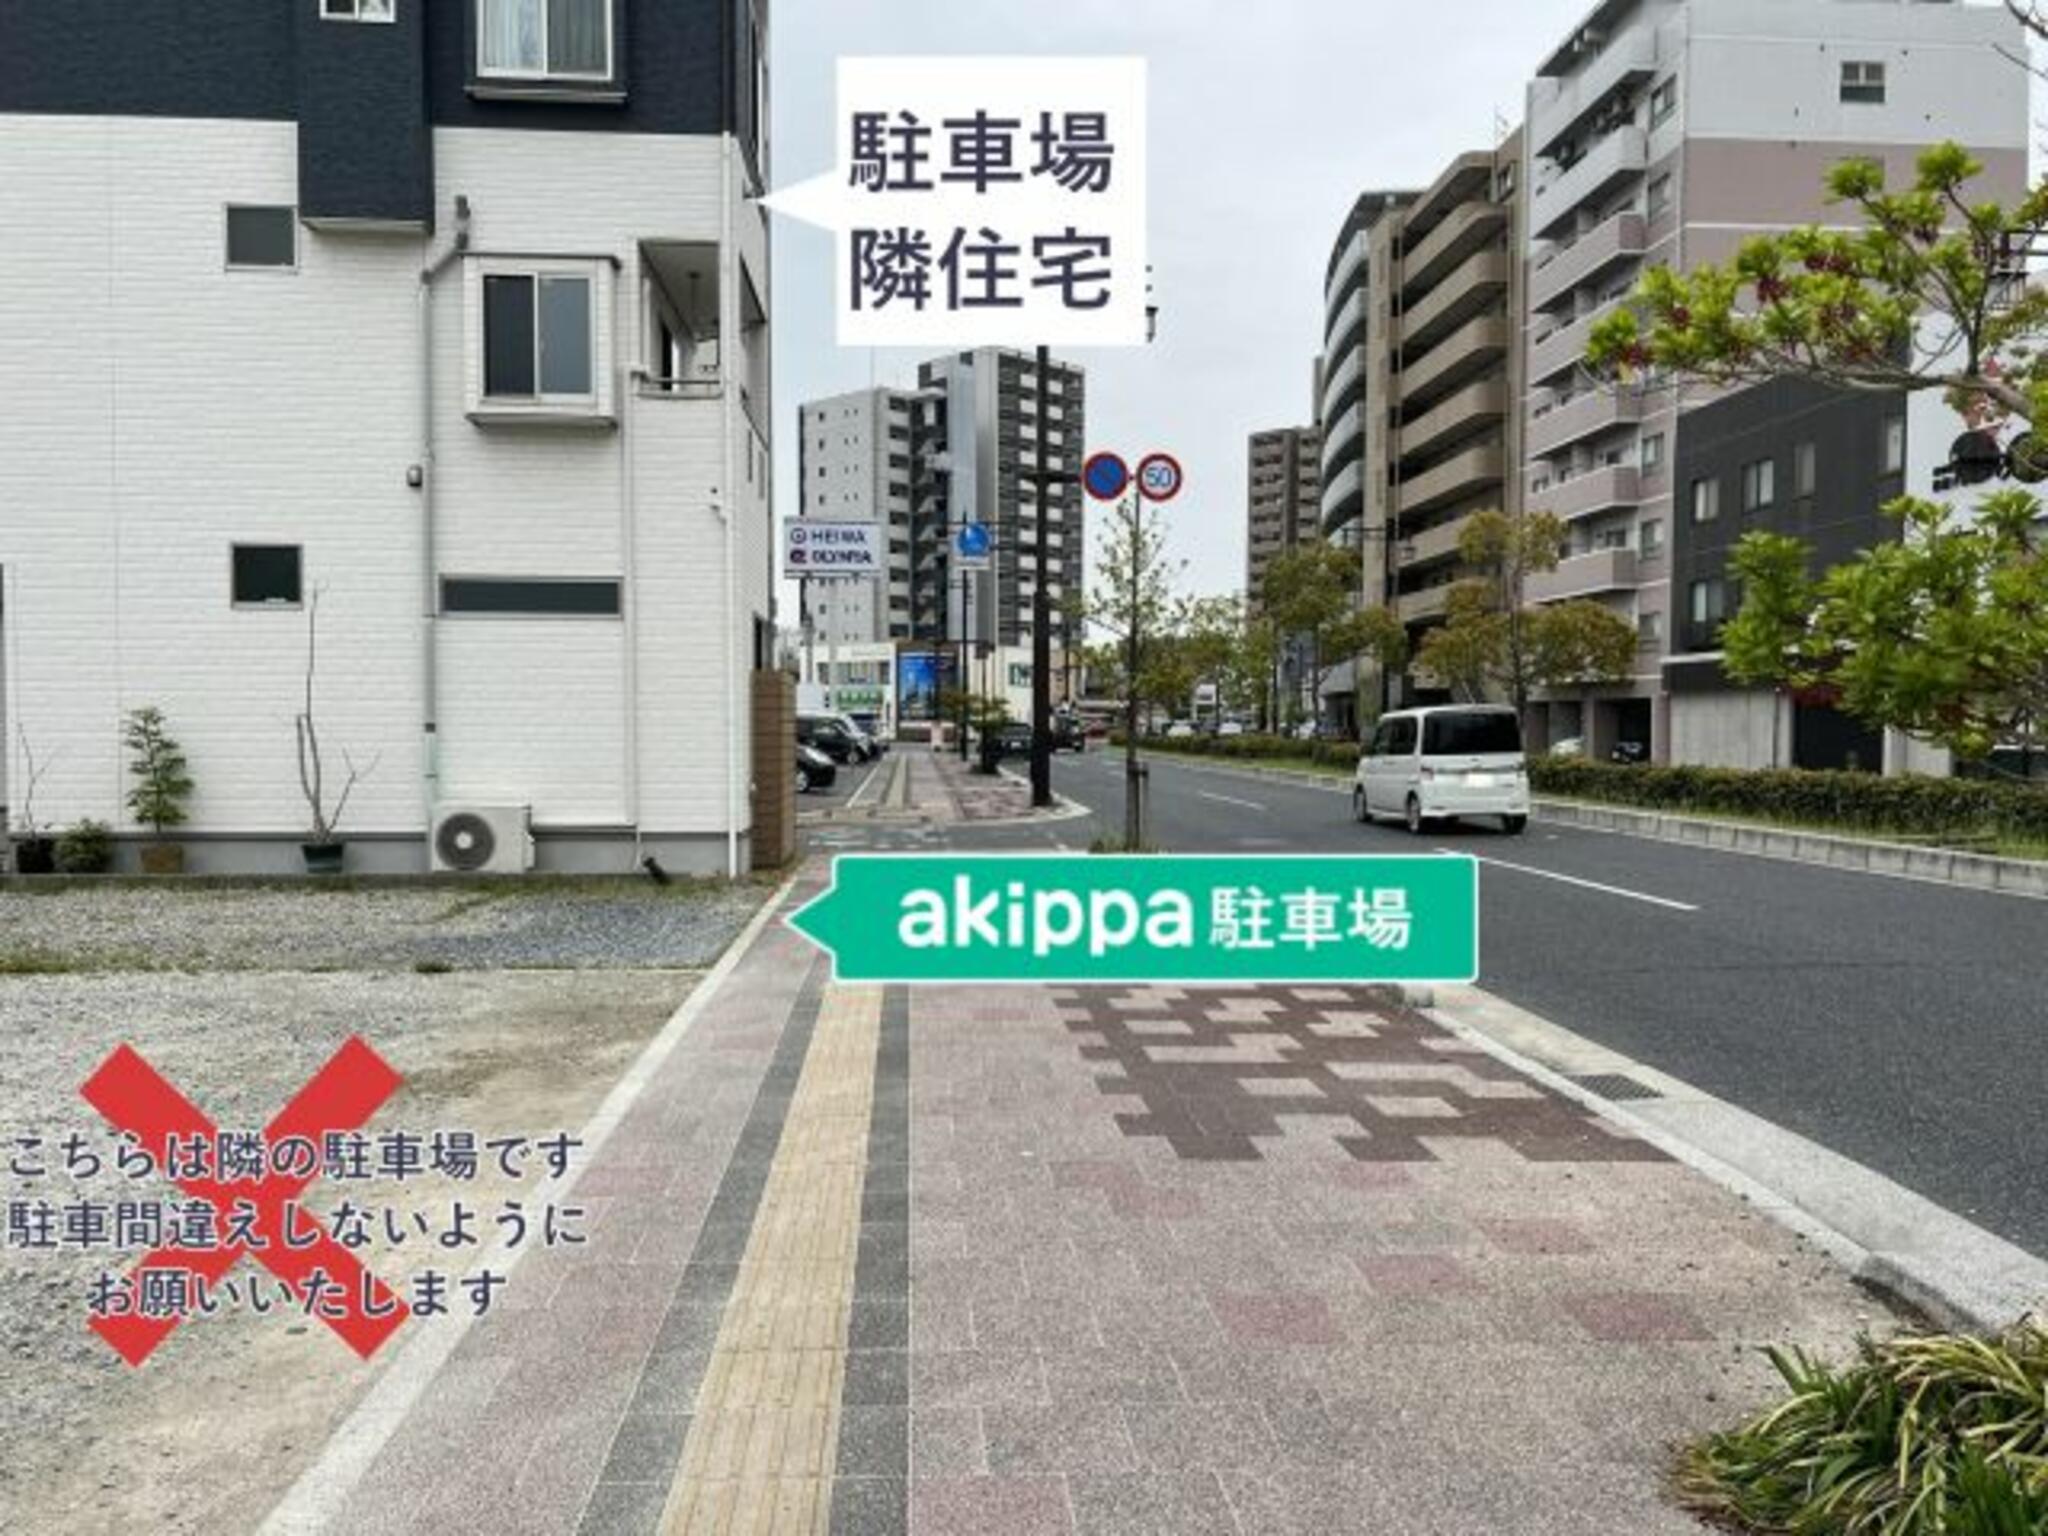 akippa駐車場:広島県広島市南区段原日出2丁目14-3の代表写真2